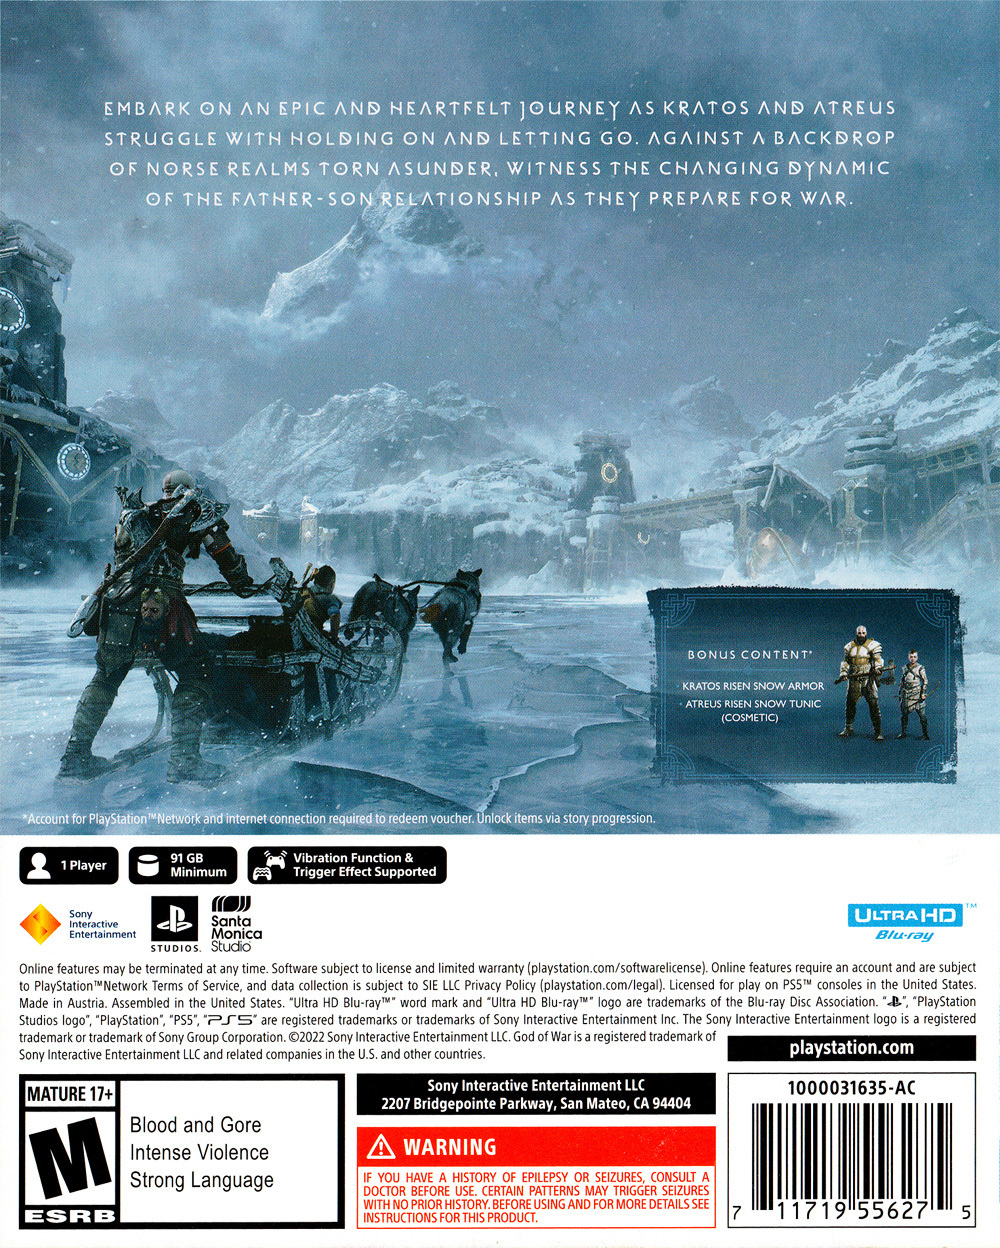  God of War Ragnarök Launch Edition - PlayStation 5